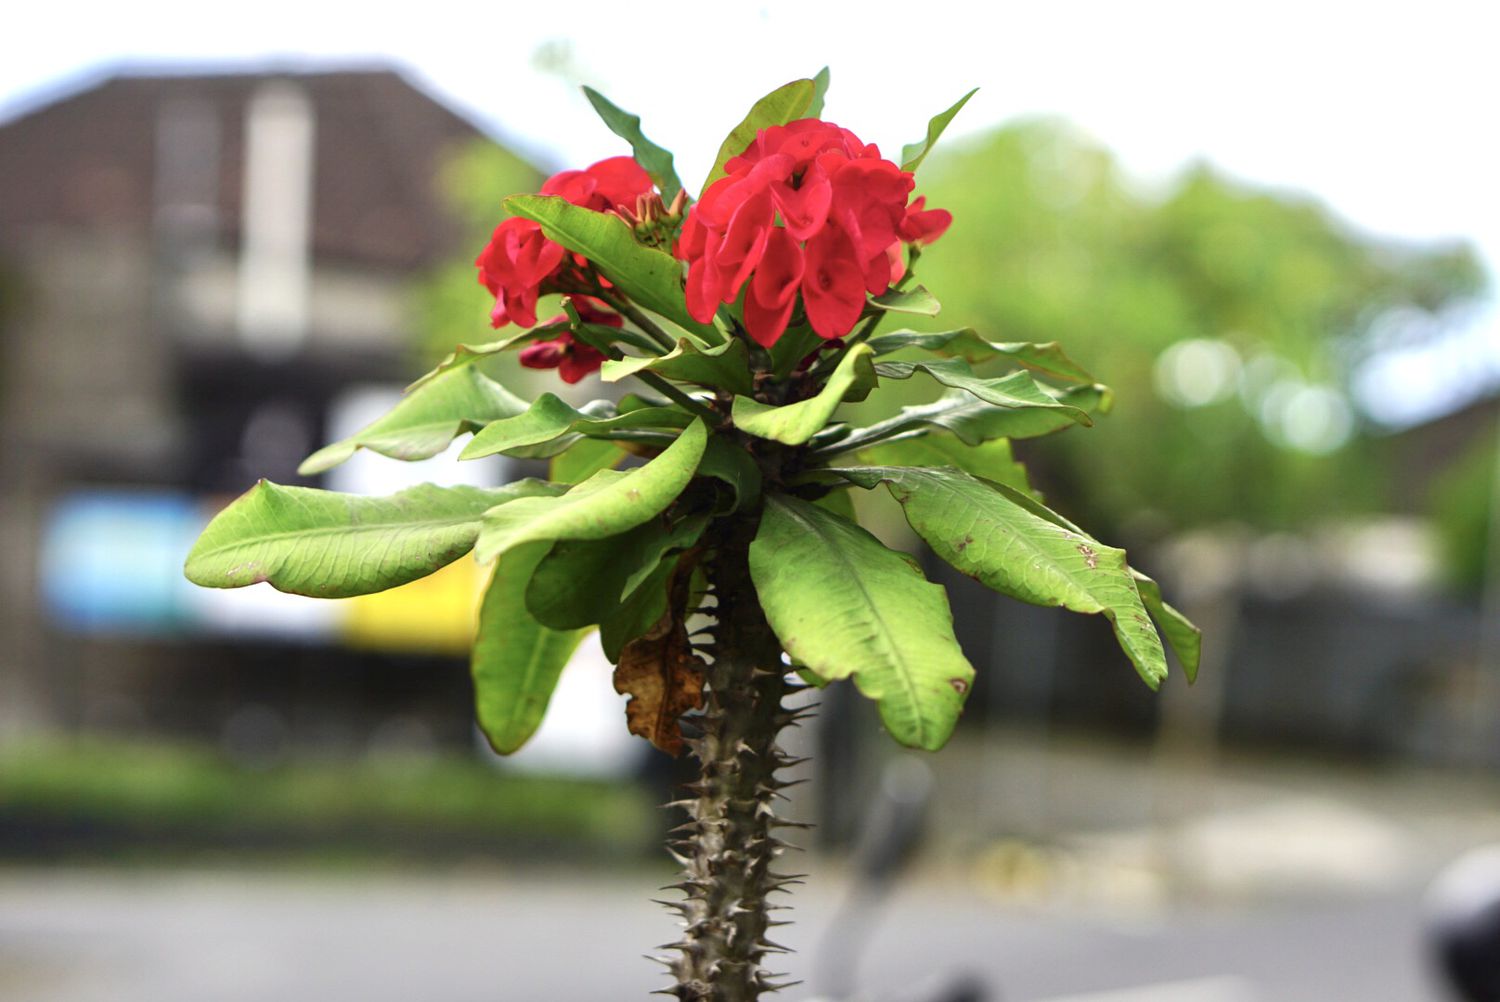 Dornenkrone Pflanze rote Blüten und Dornen an einem Stiel